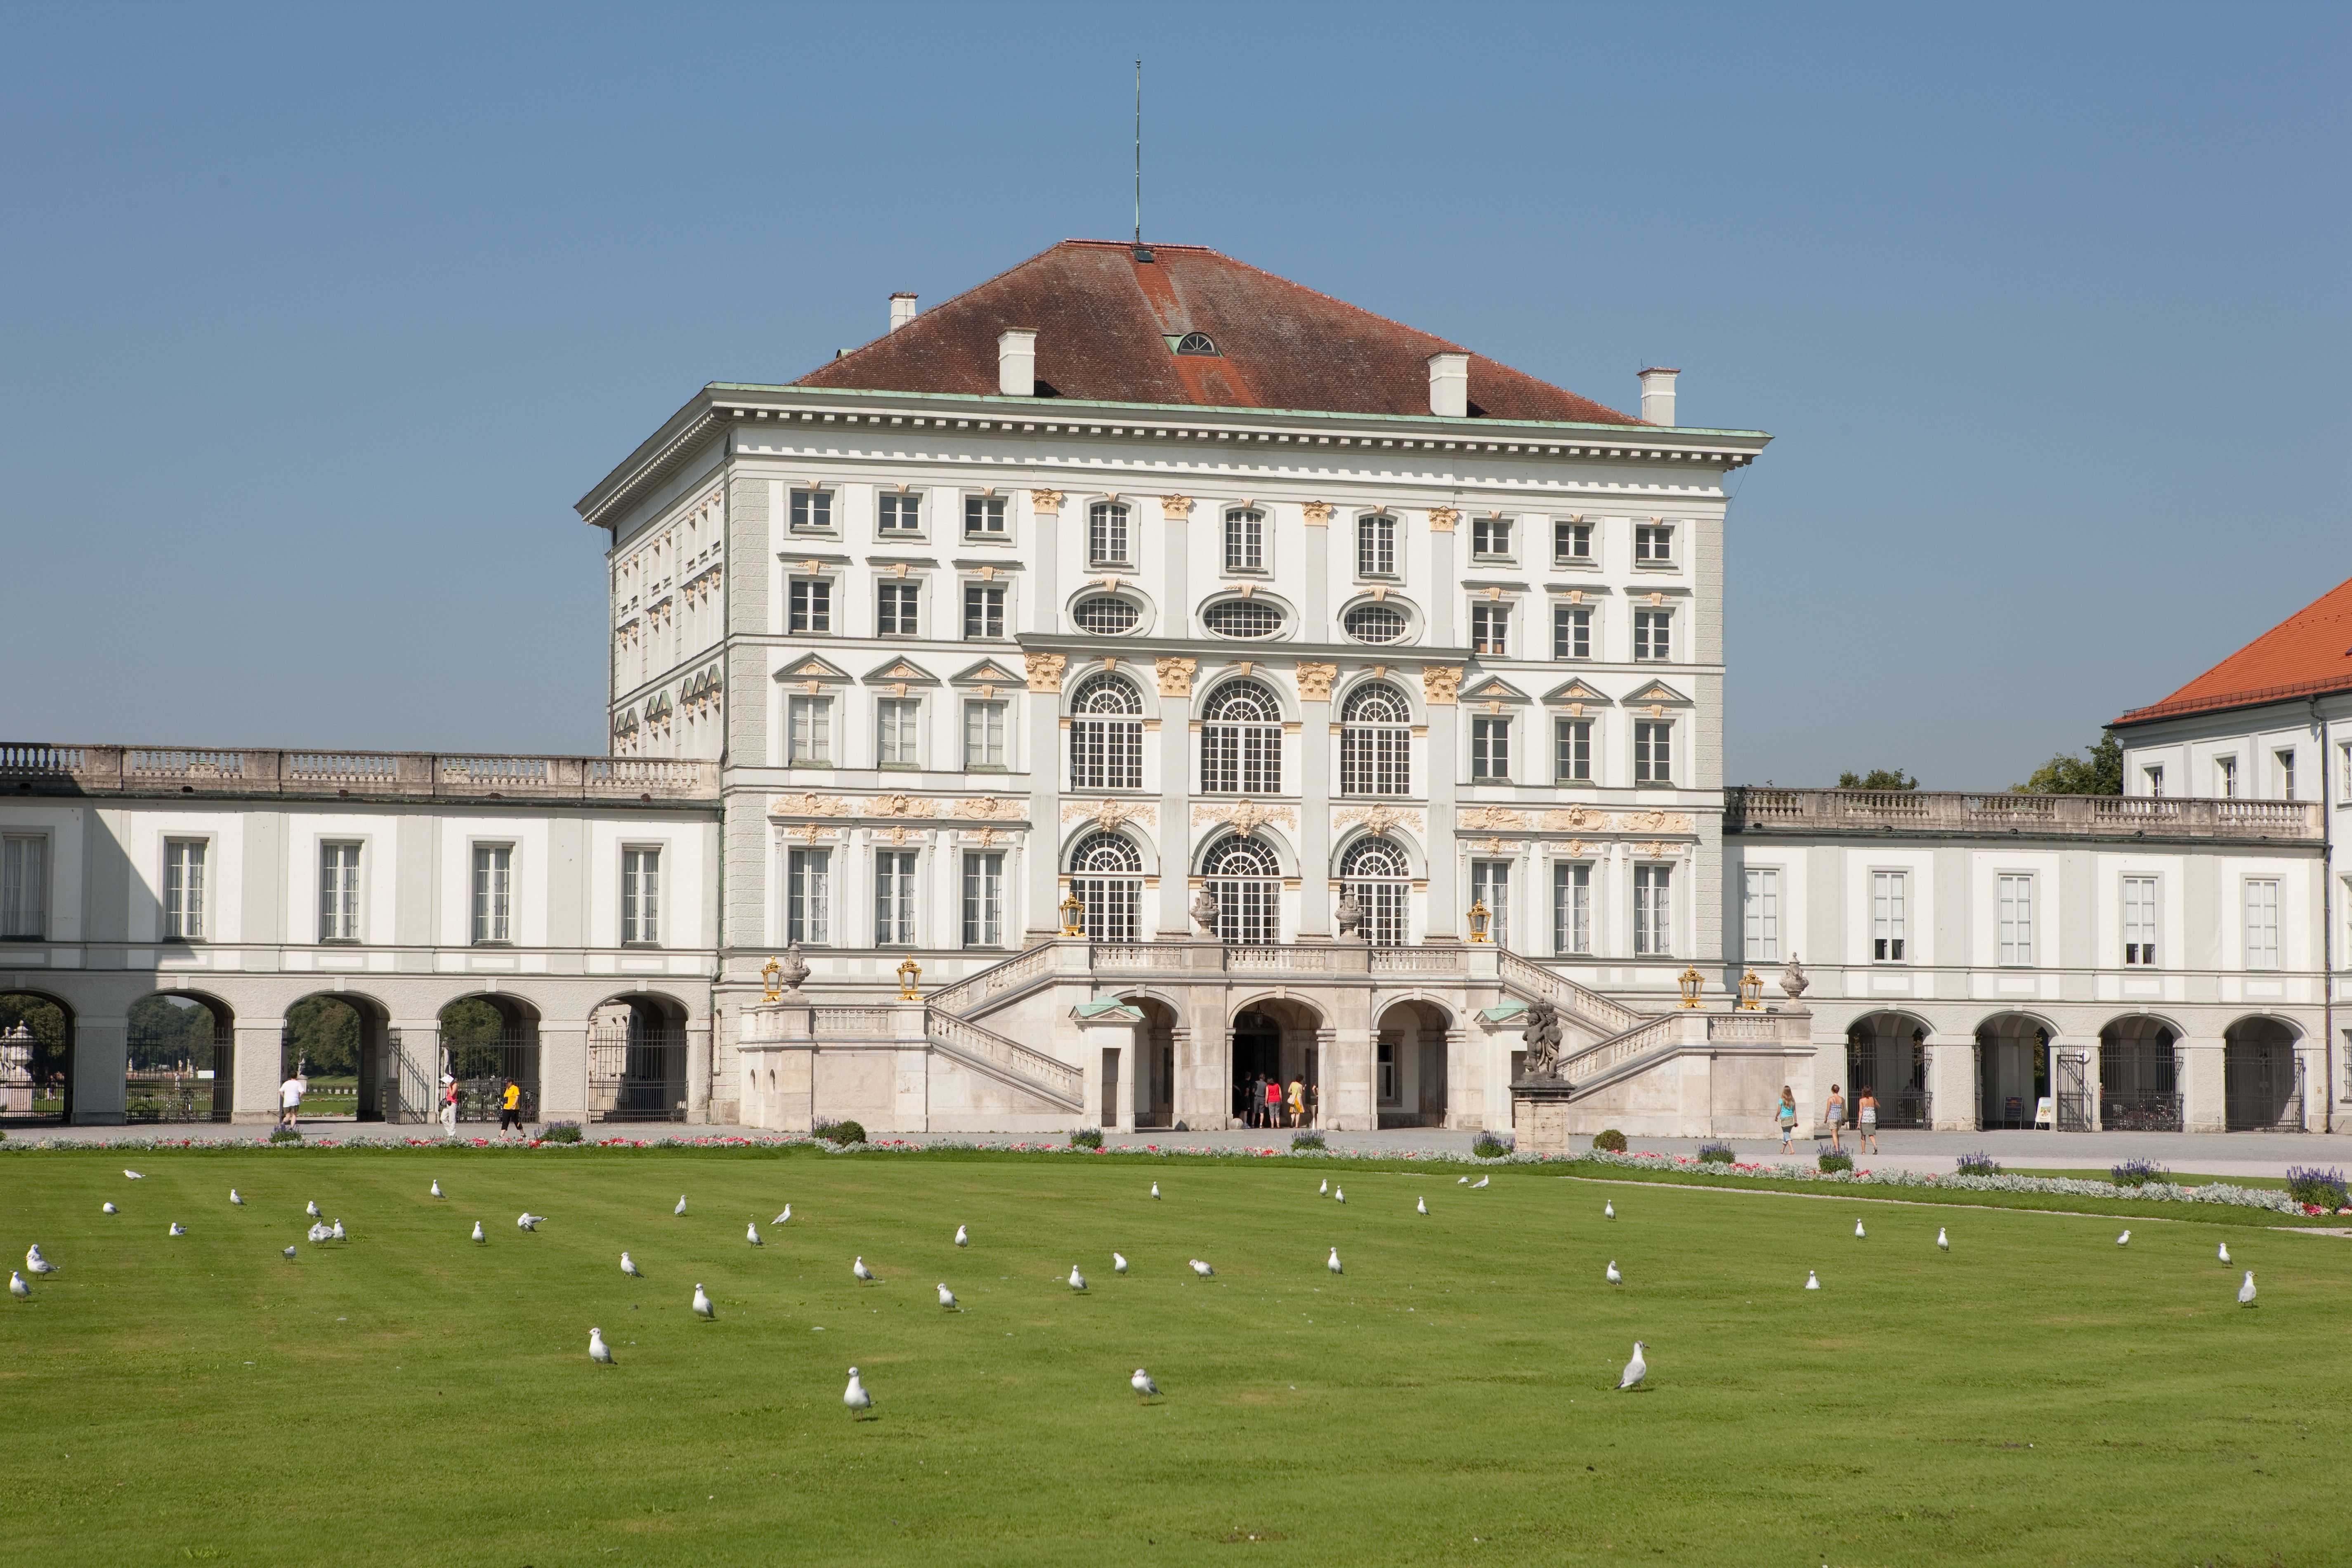 Дворец Нимфенбург - дворцовый комплекс в Мюнхене, состоящий из дворца Нимфенбург и прилегающего парка, являющийся одним из лучших и крупнейших королевских замков Европы Дворец внесен в список Баварских достопримечательностей